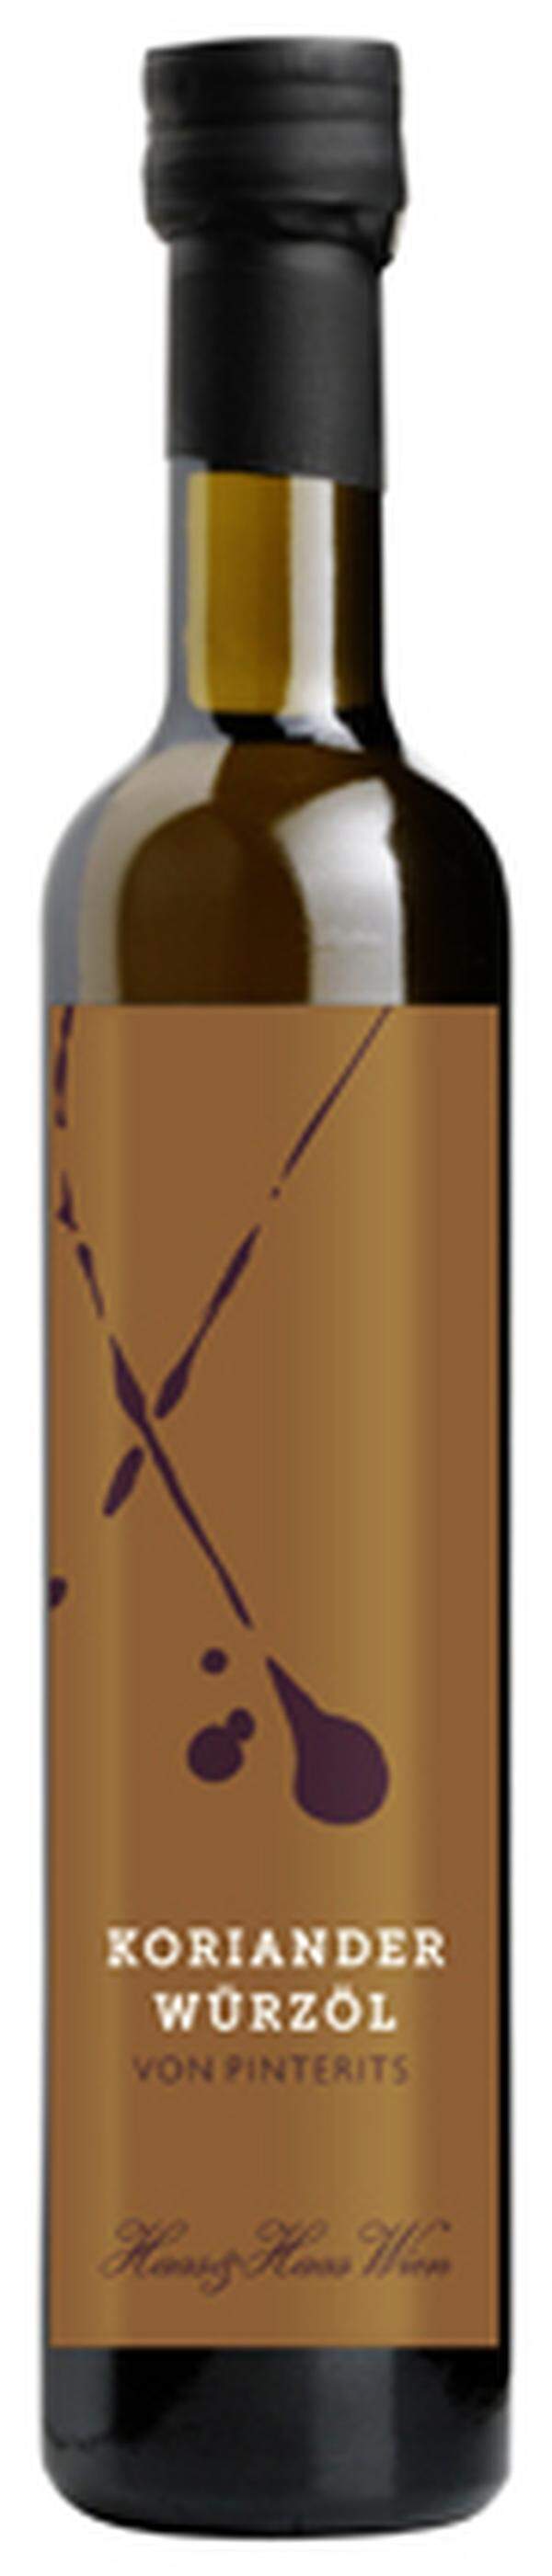 Die Pinterits-Würzöle gibt es auch, in anderen Flaschen bei Porta Dextra, 1010 Wien, Ertlgasse 4. 9,90 bis 11,90 Euro.